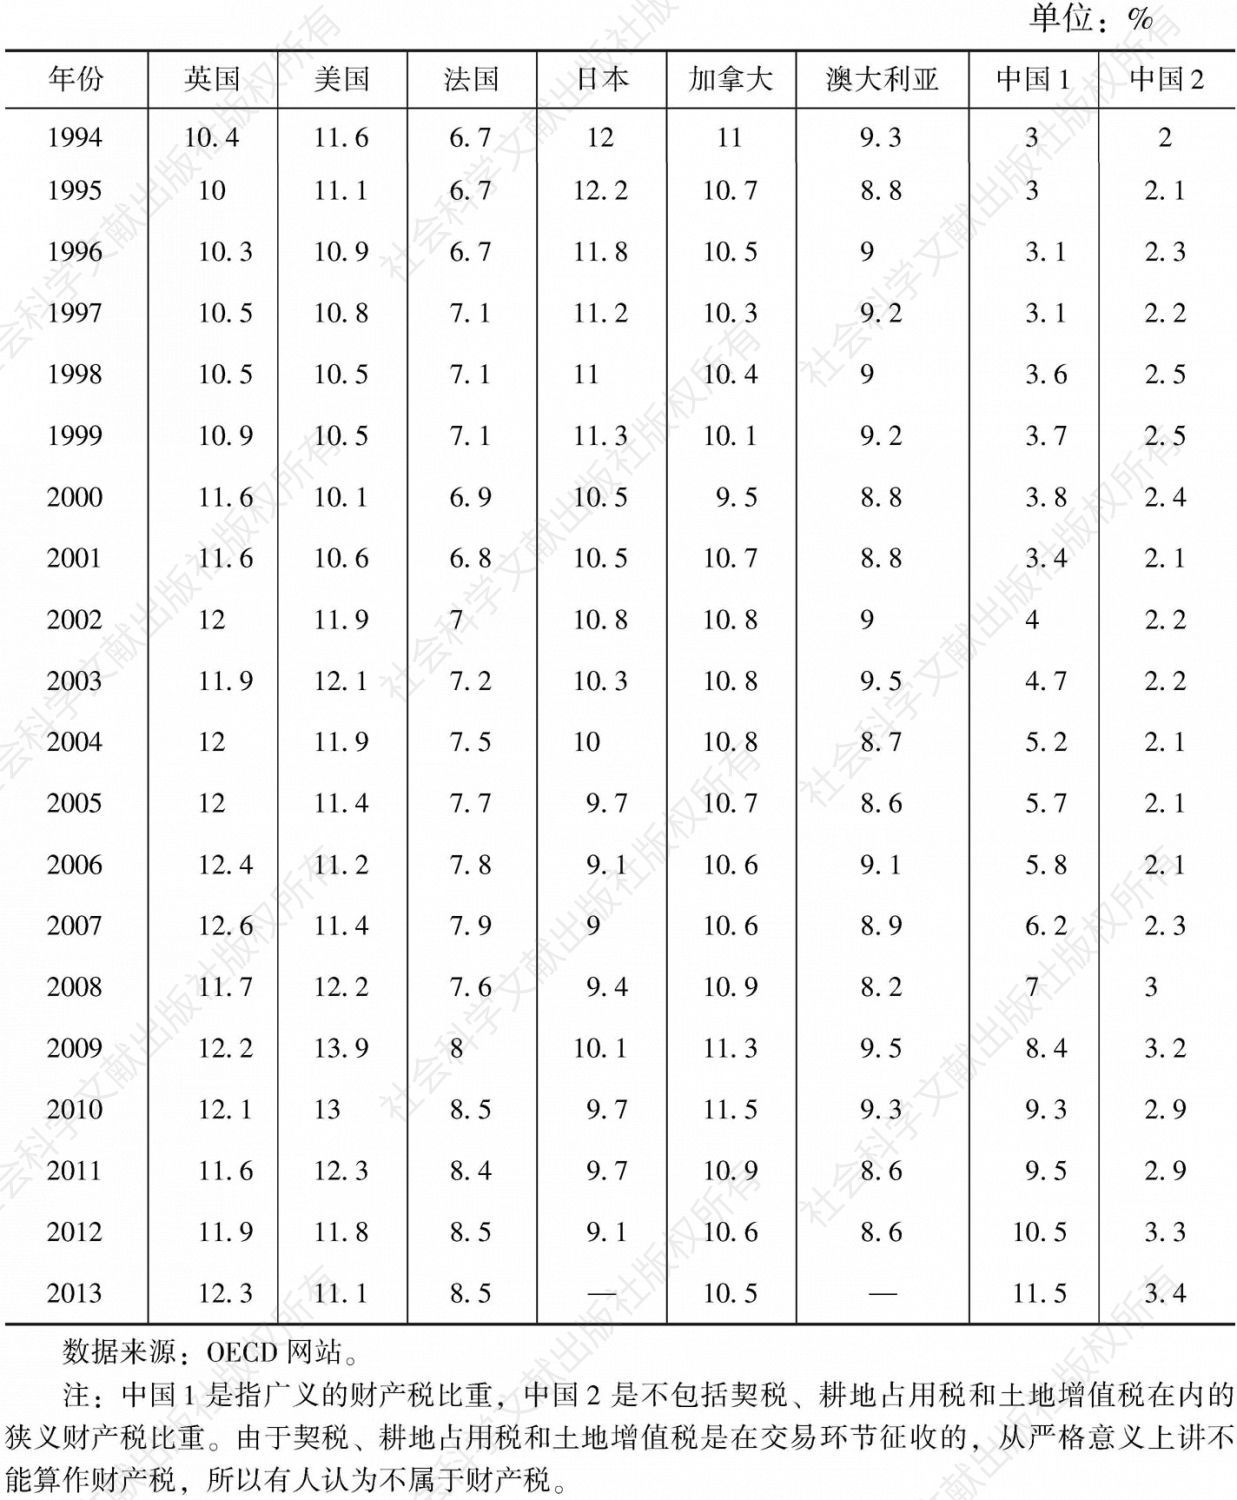 表7-11 1994～2013年OECD部分成员国财产税比重变动情况